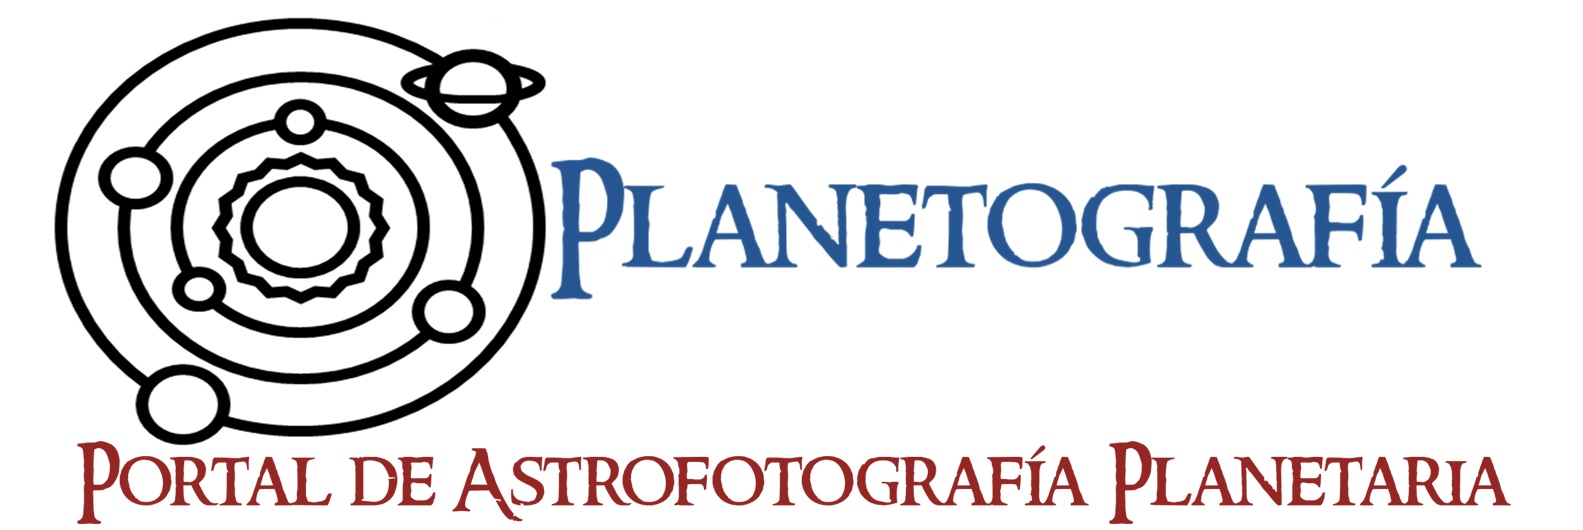 logo planetografia